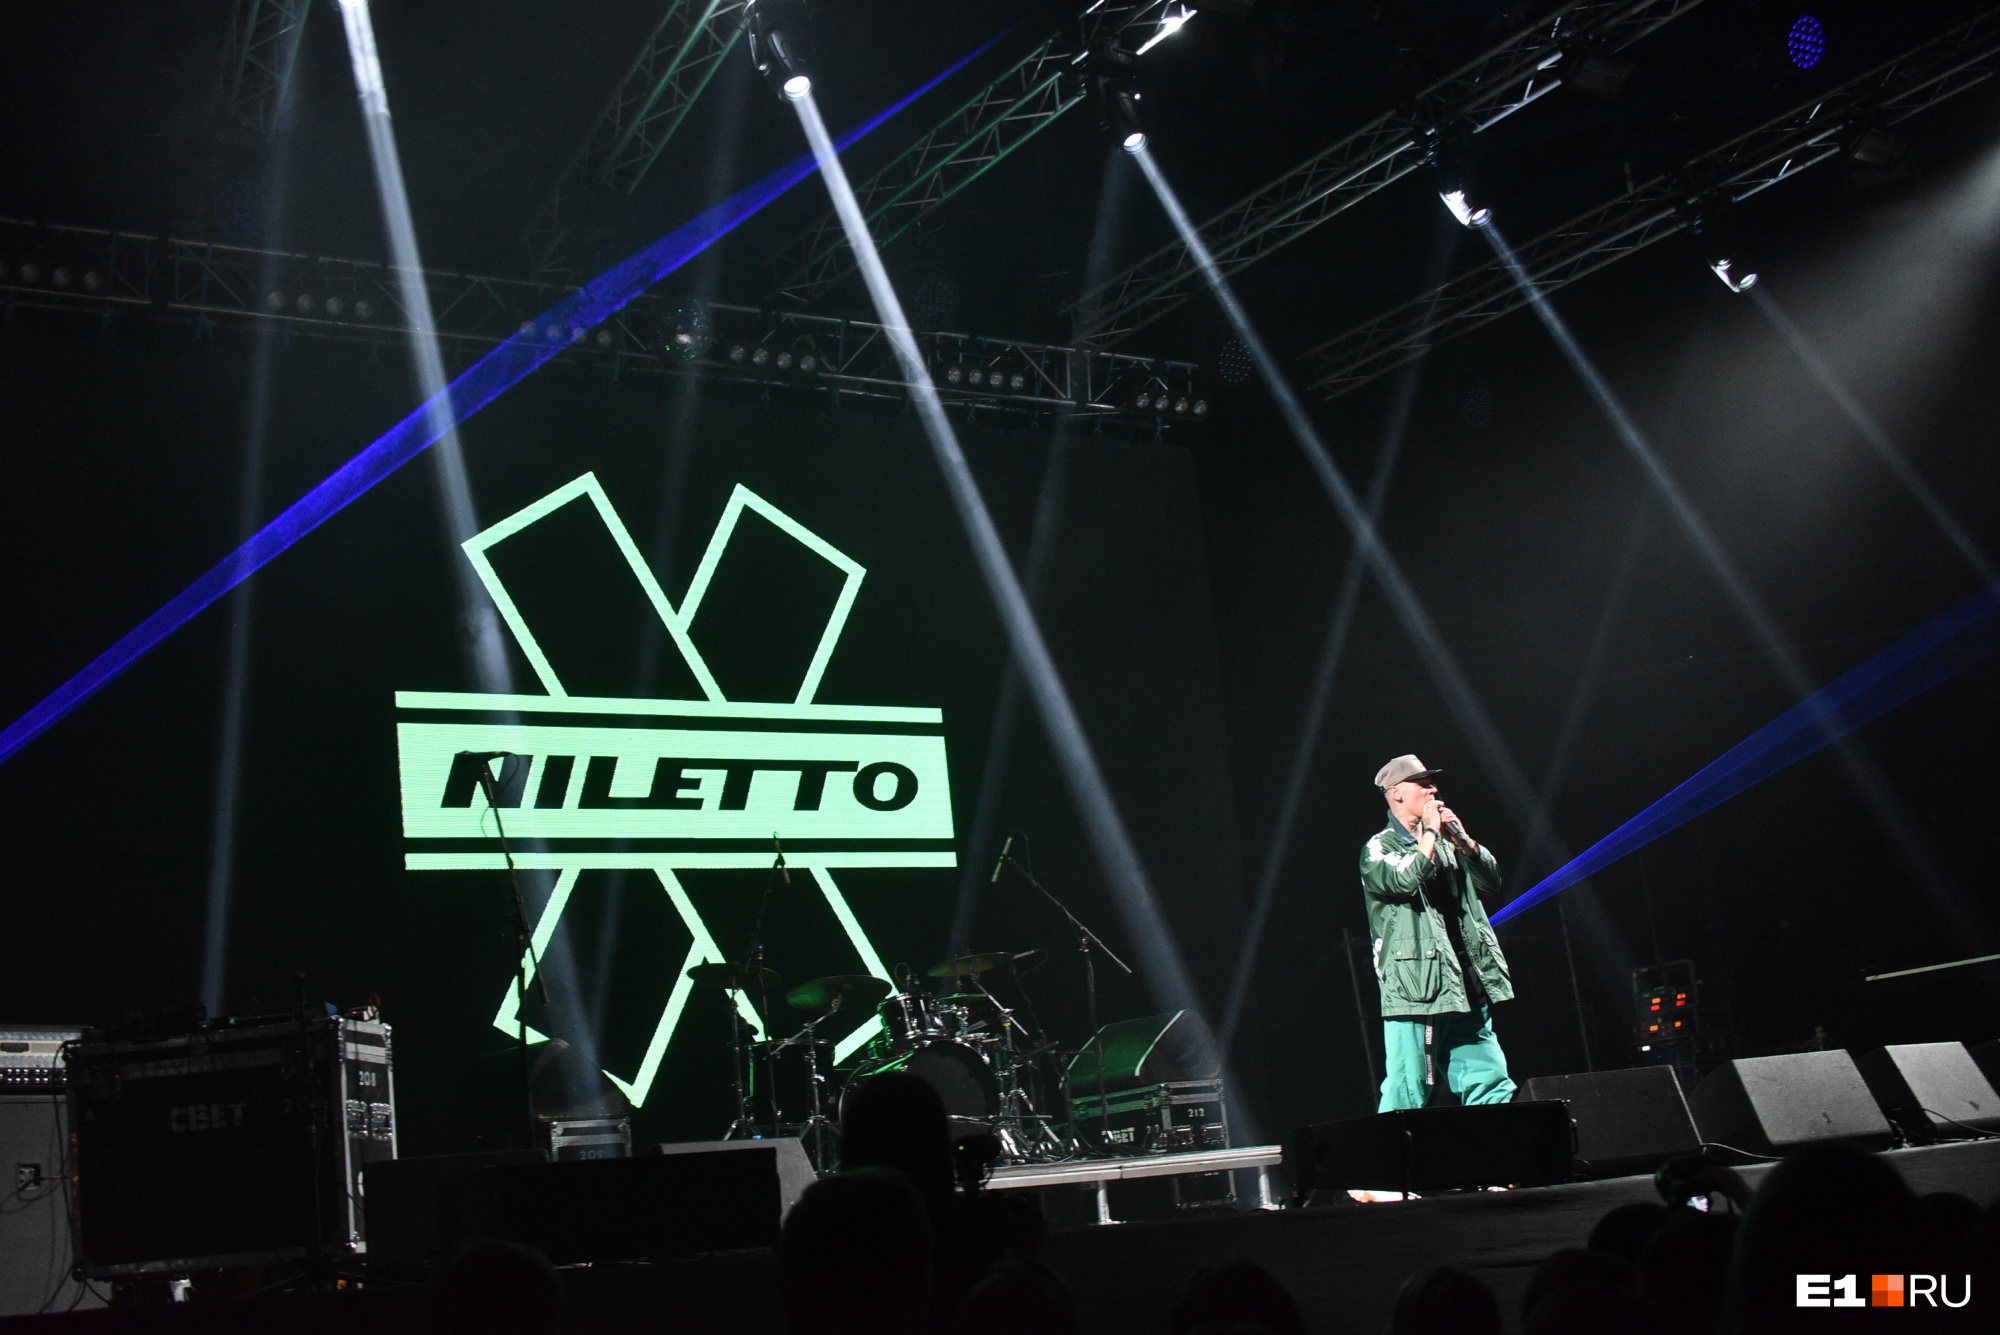 Оказалось, что Niletto очень популярен среди выпускников, по крайней мере, его песни ребята знали наизусть